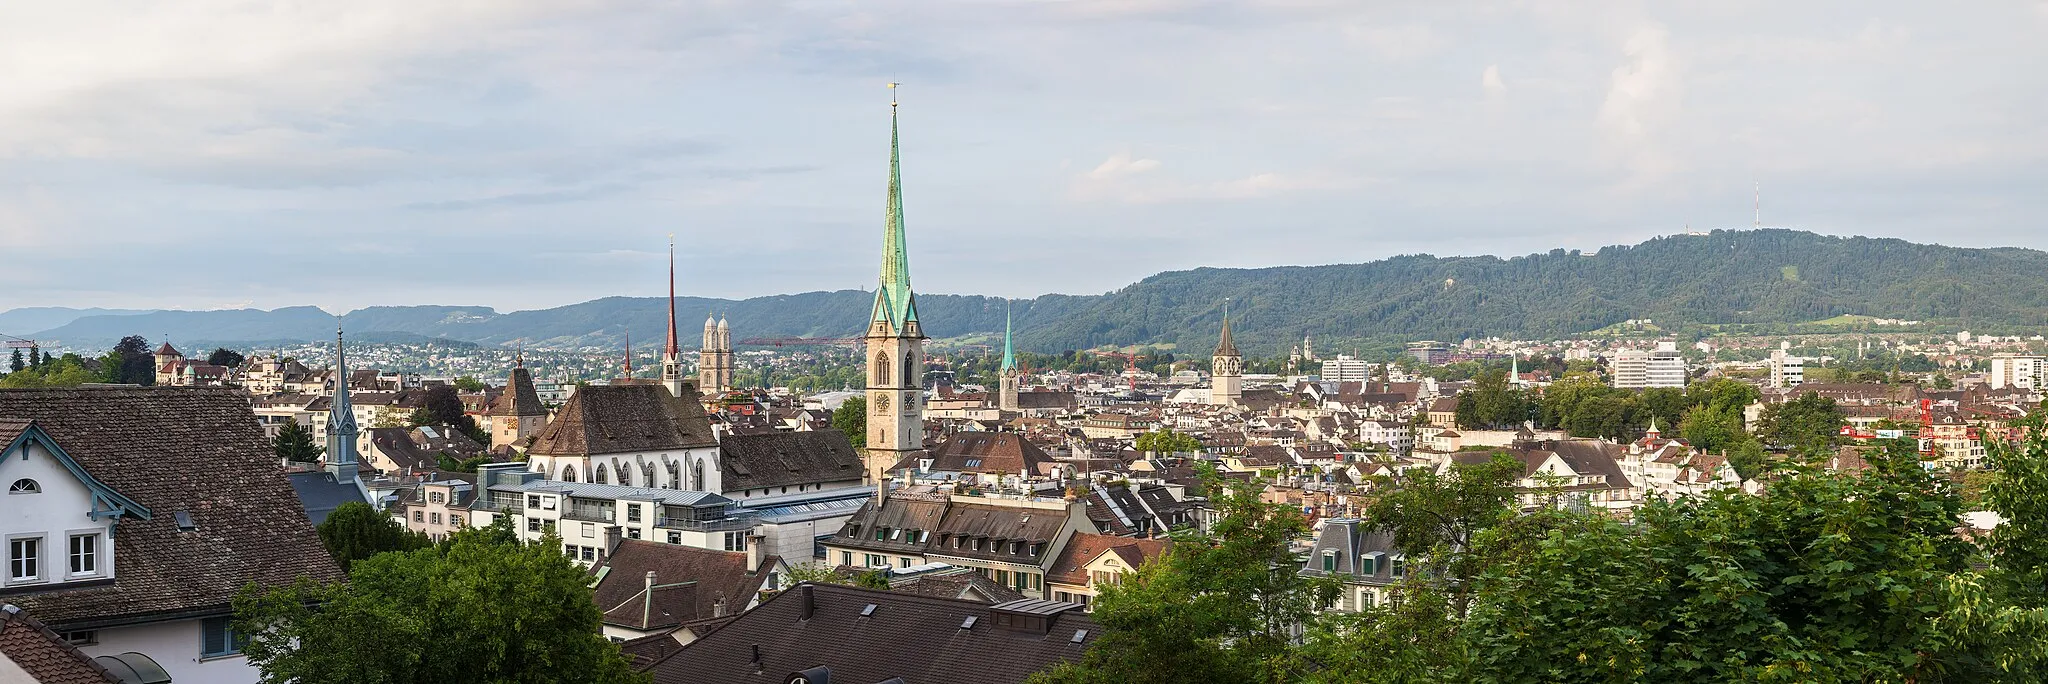 Photo showing: City of Zürich, Switzerland